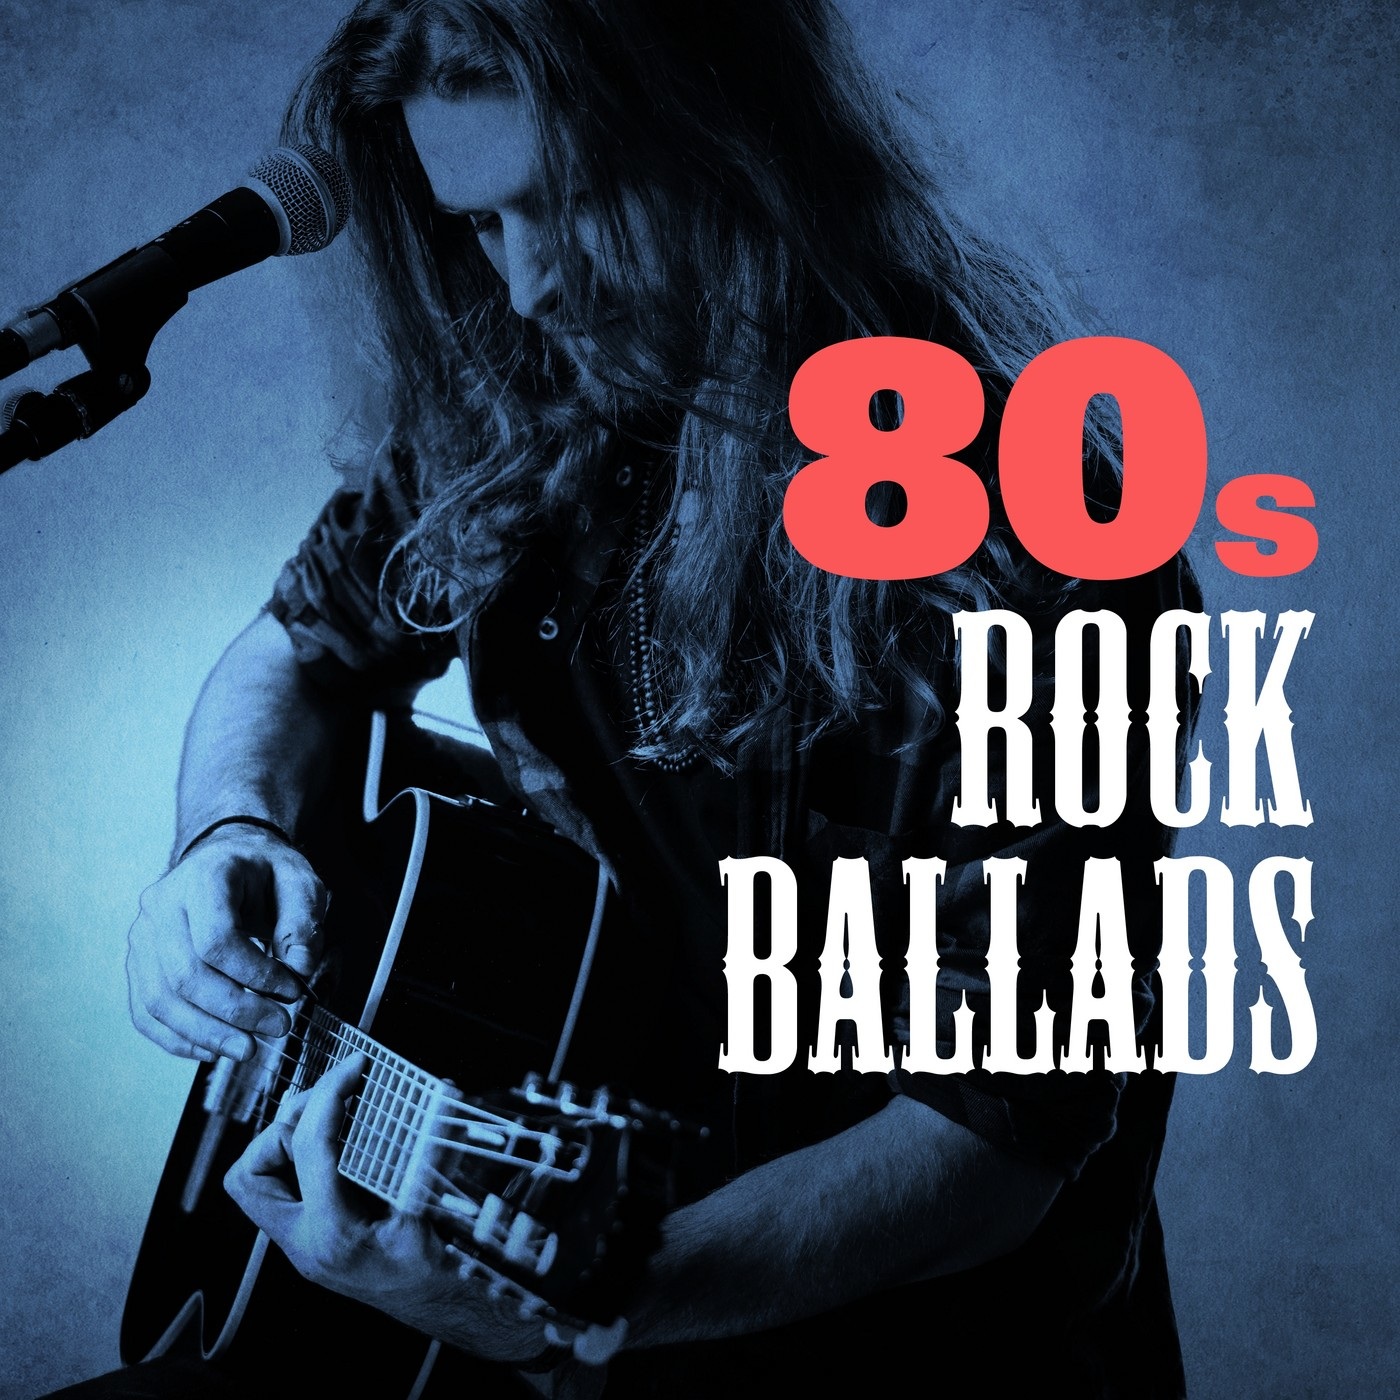 Слушать лучшие рок песни 90. 80s Rock Ballads. Rock 80s обложка. Rock Ballads CD. Rock Ballads 90.